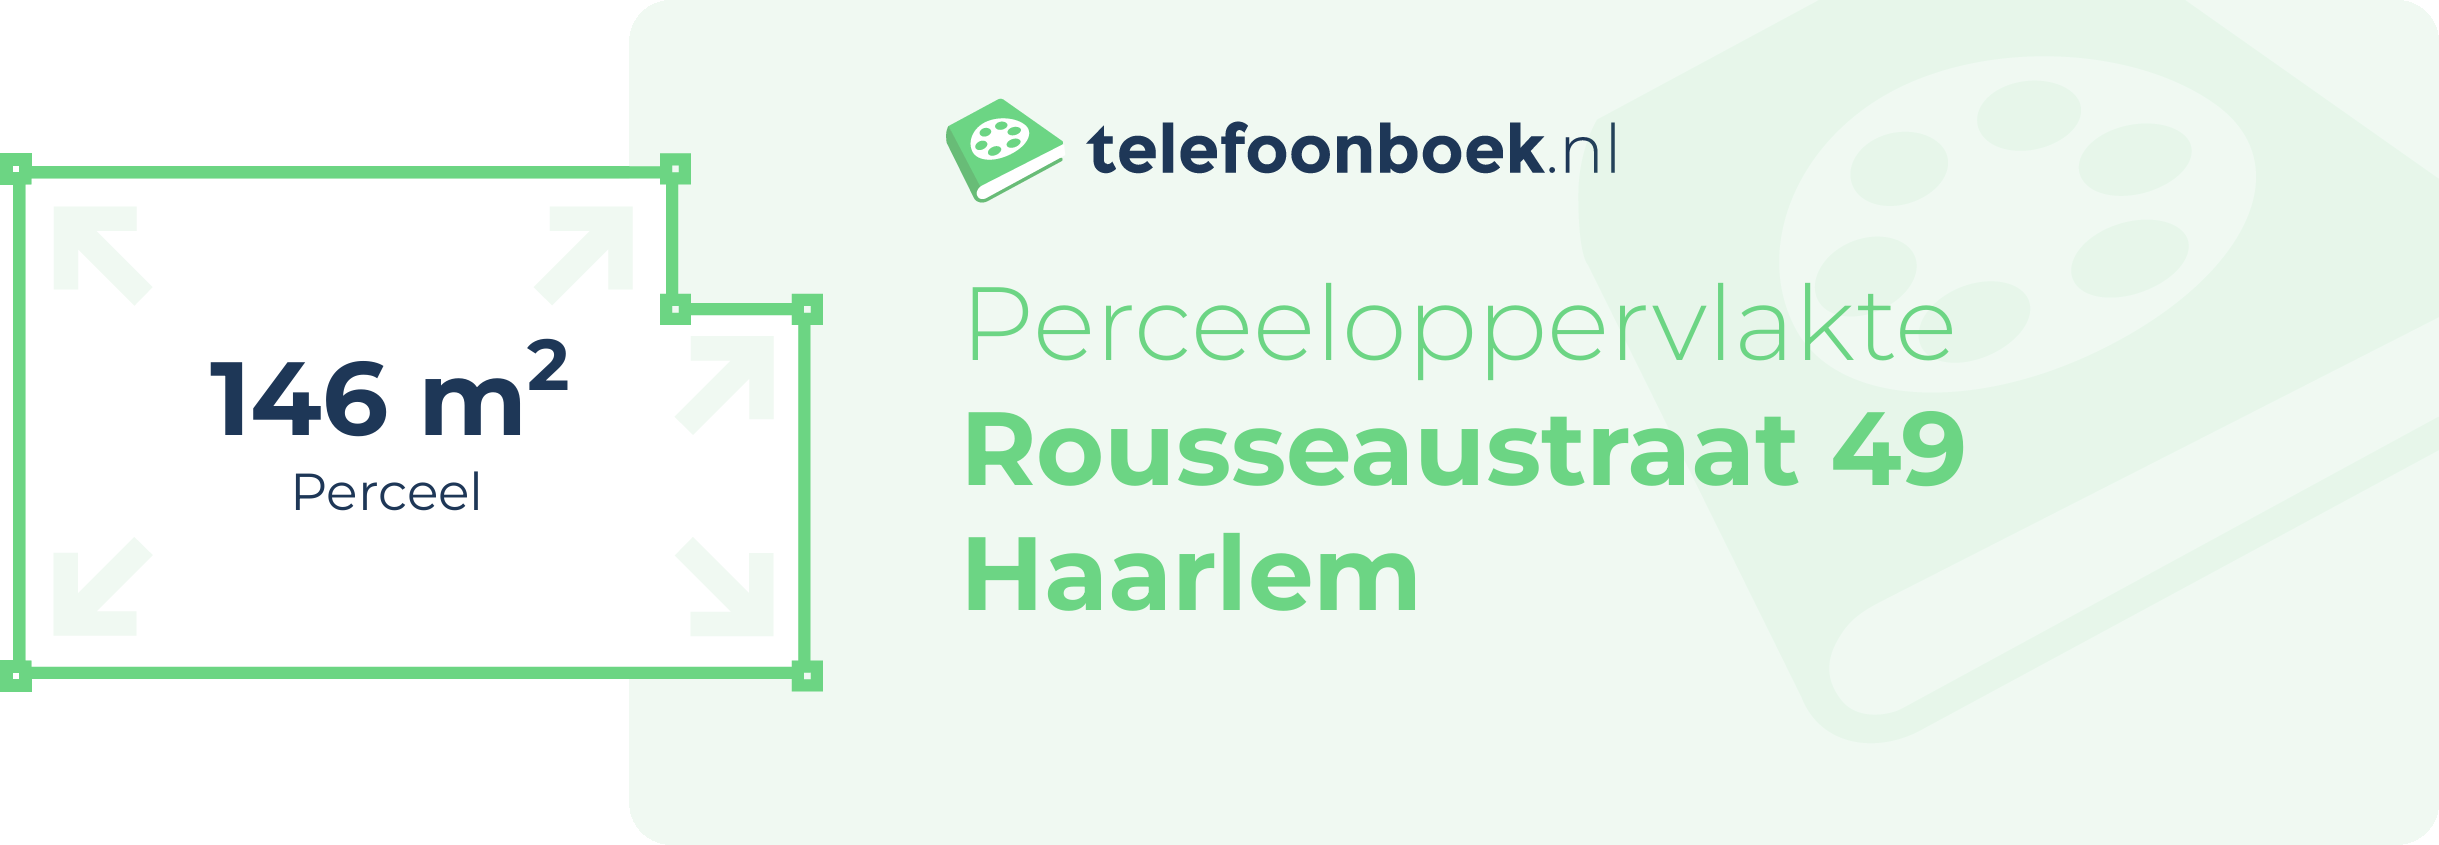 Perceeloppervlakte Rousseaustraat 49 Haarlem